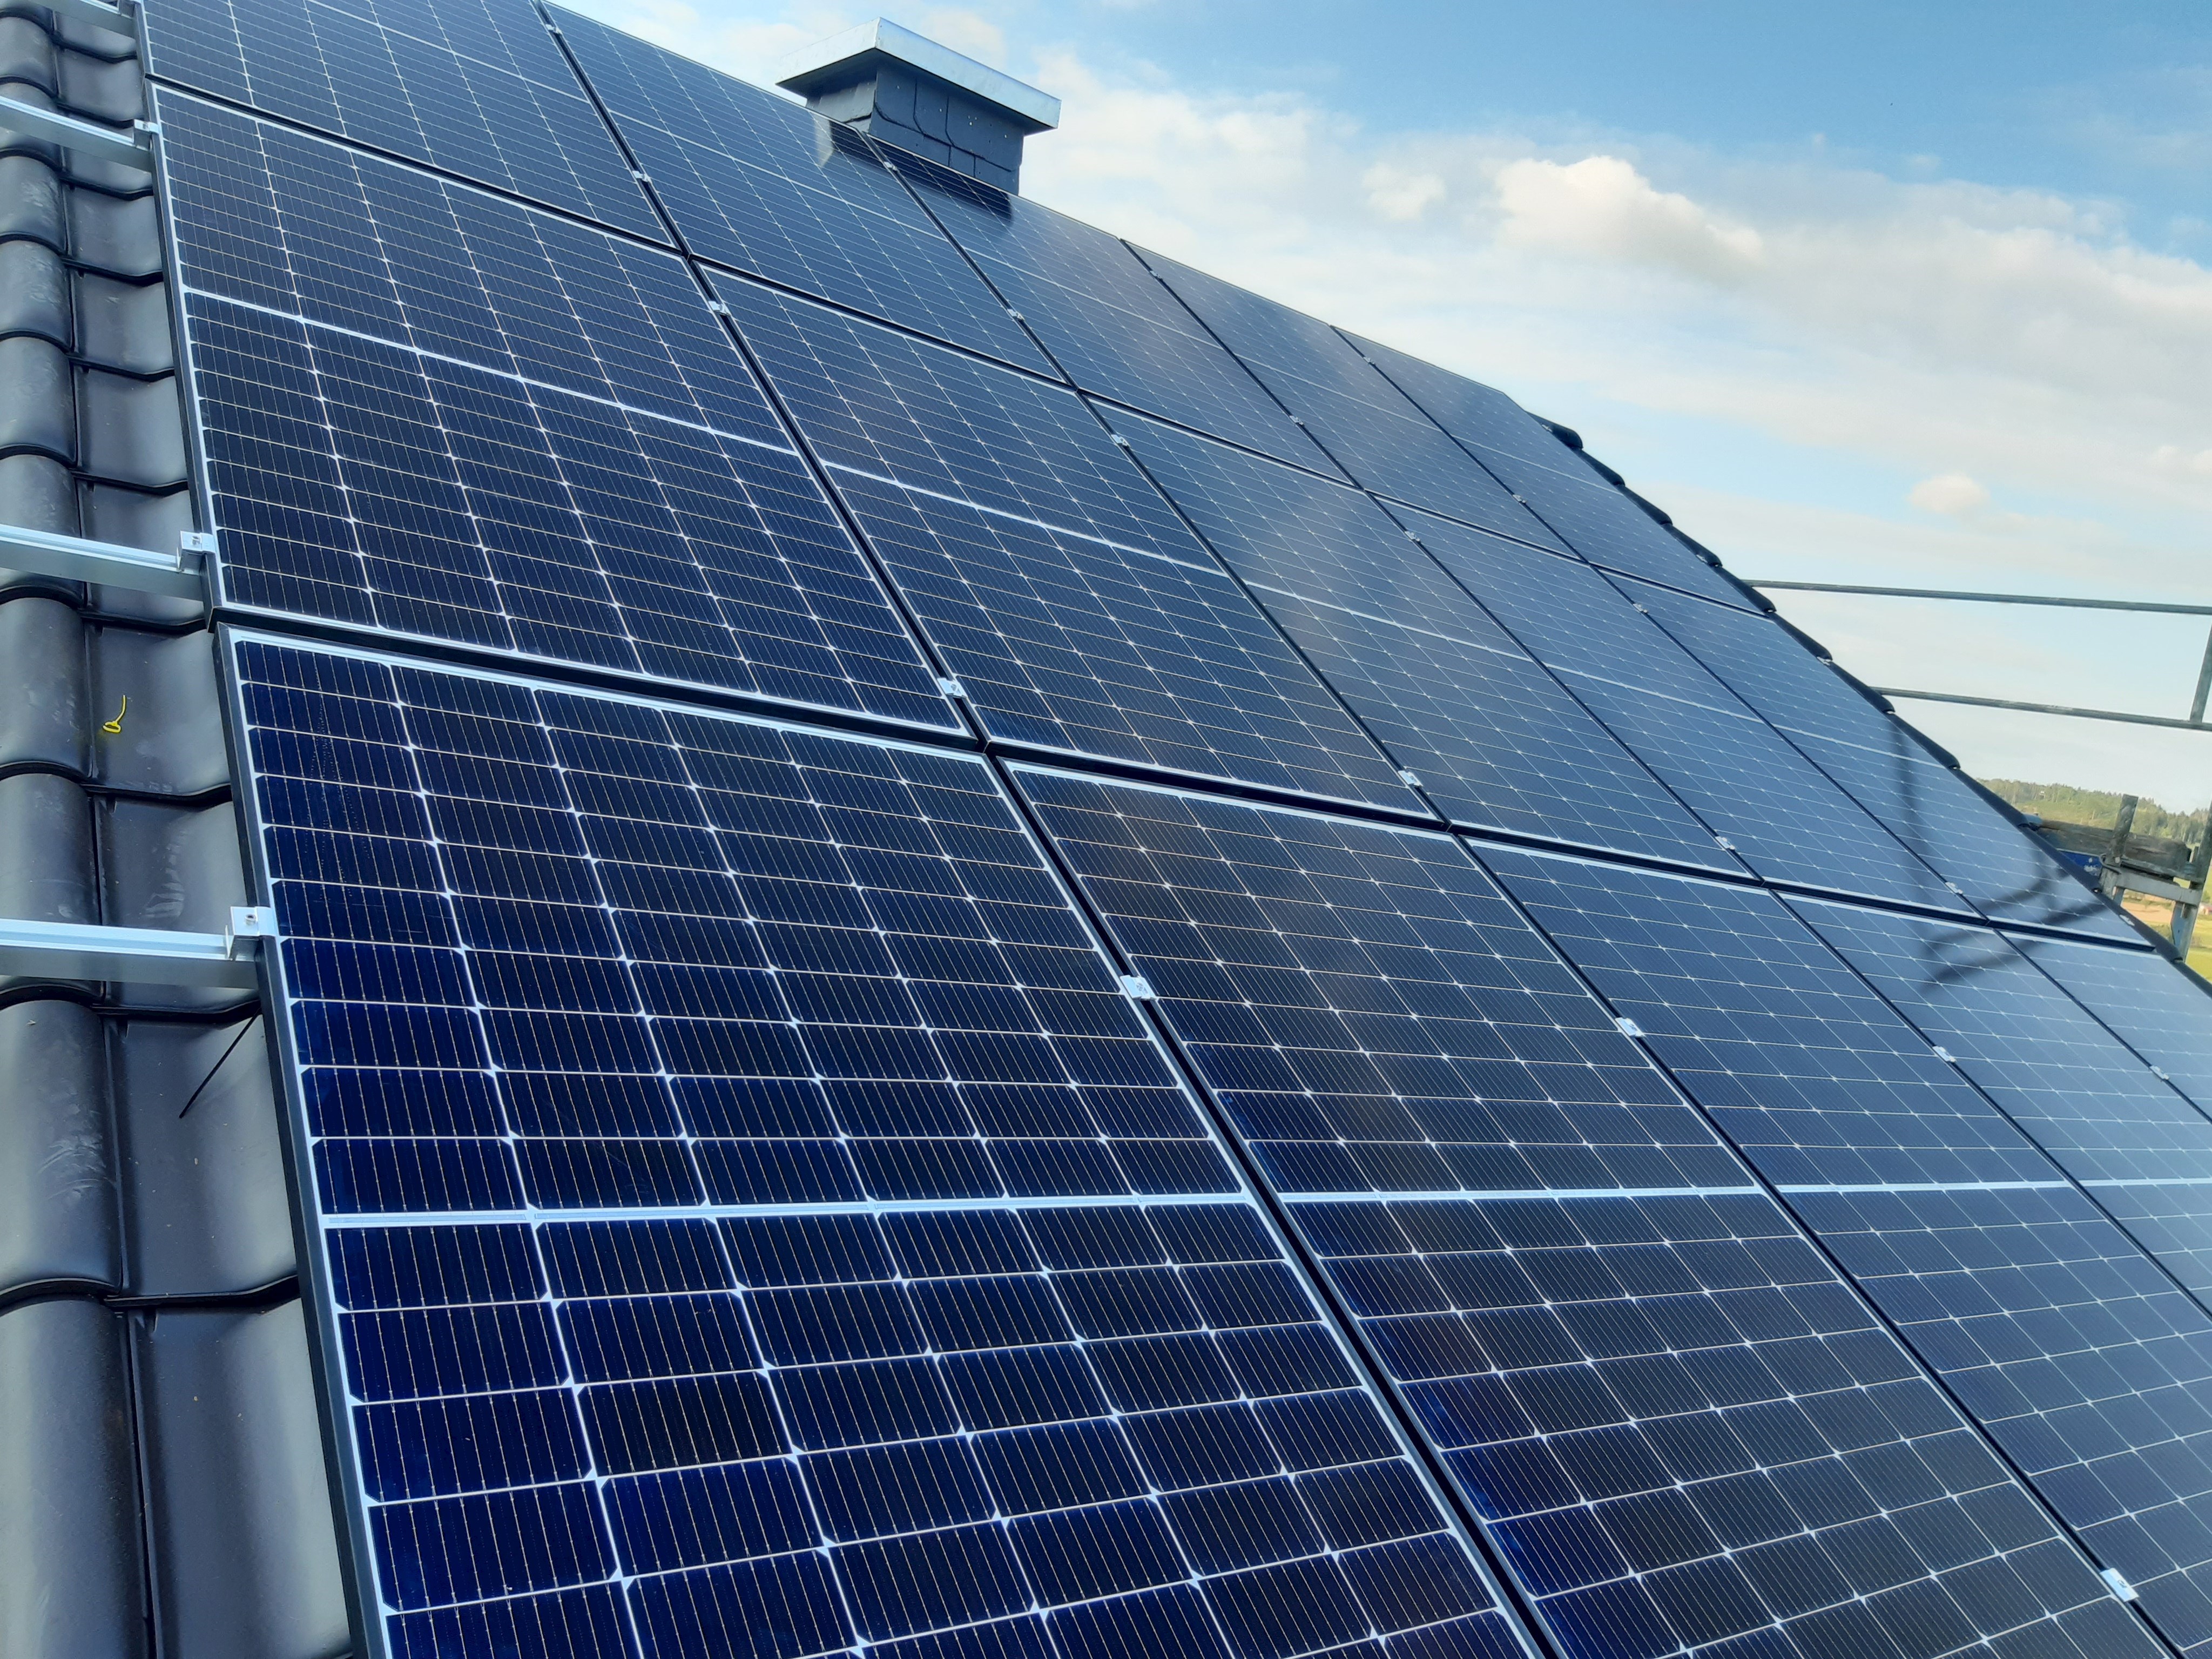 Infoabend Photovoltaik – mit der Sonne zu mehr Unabhängigkeit